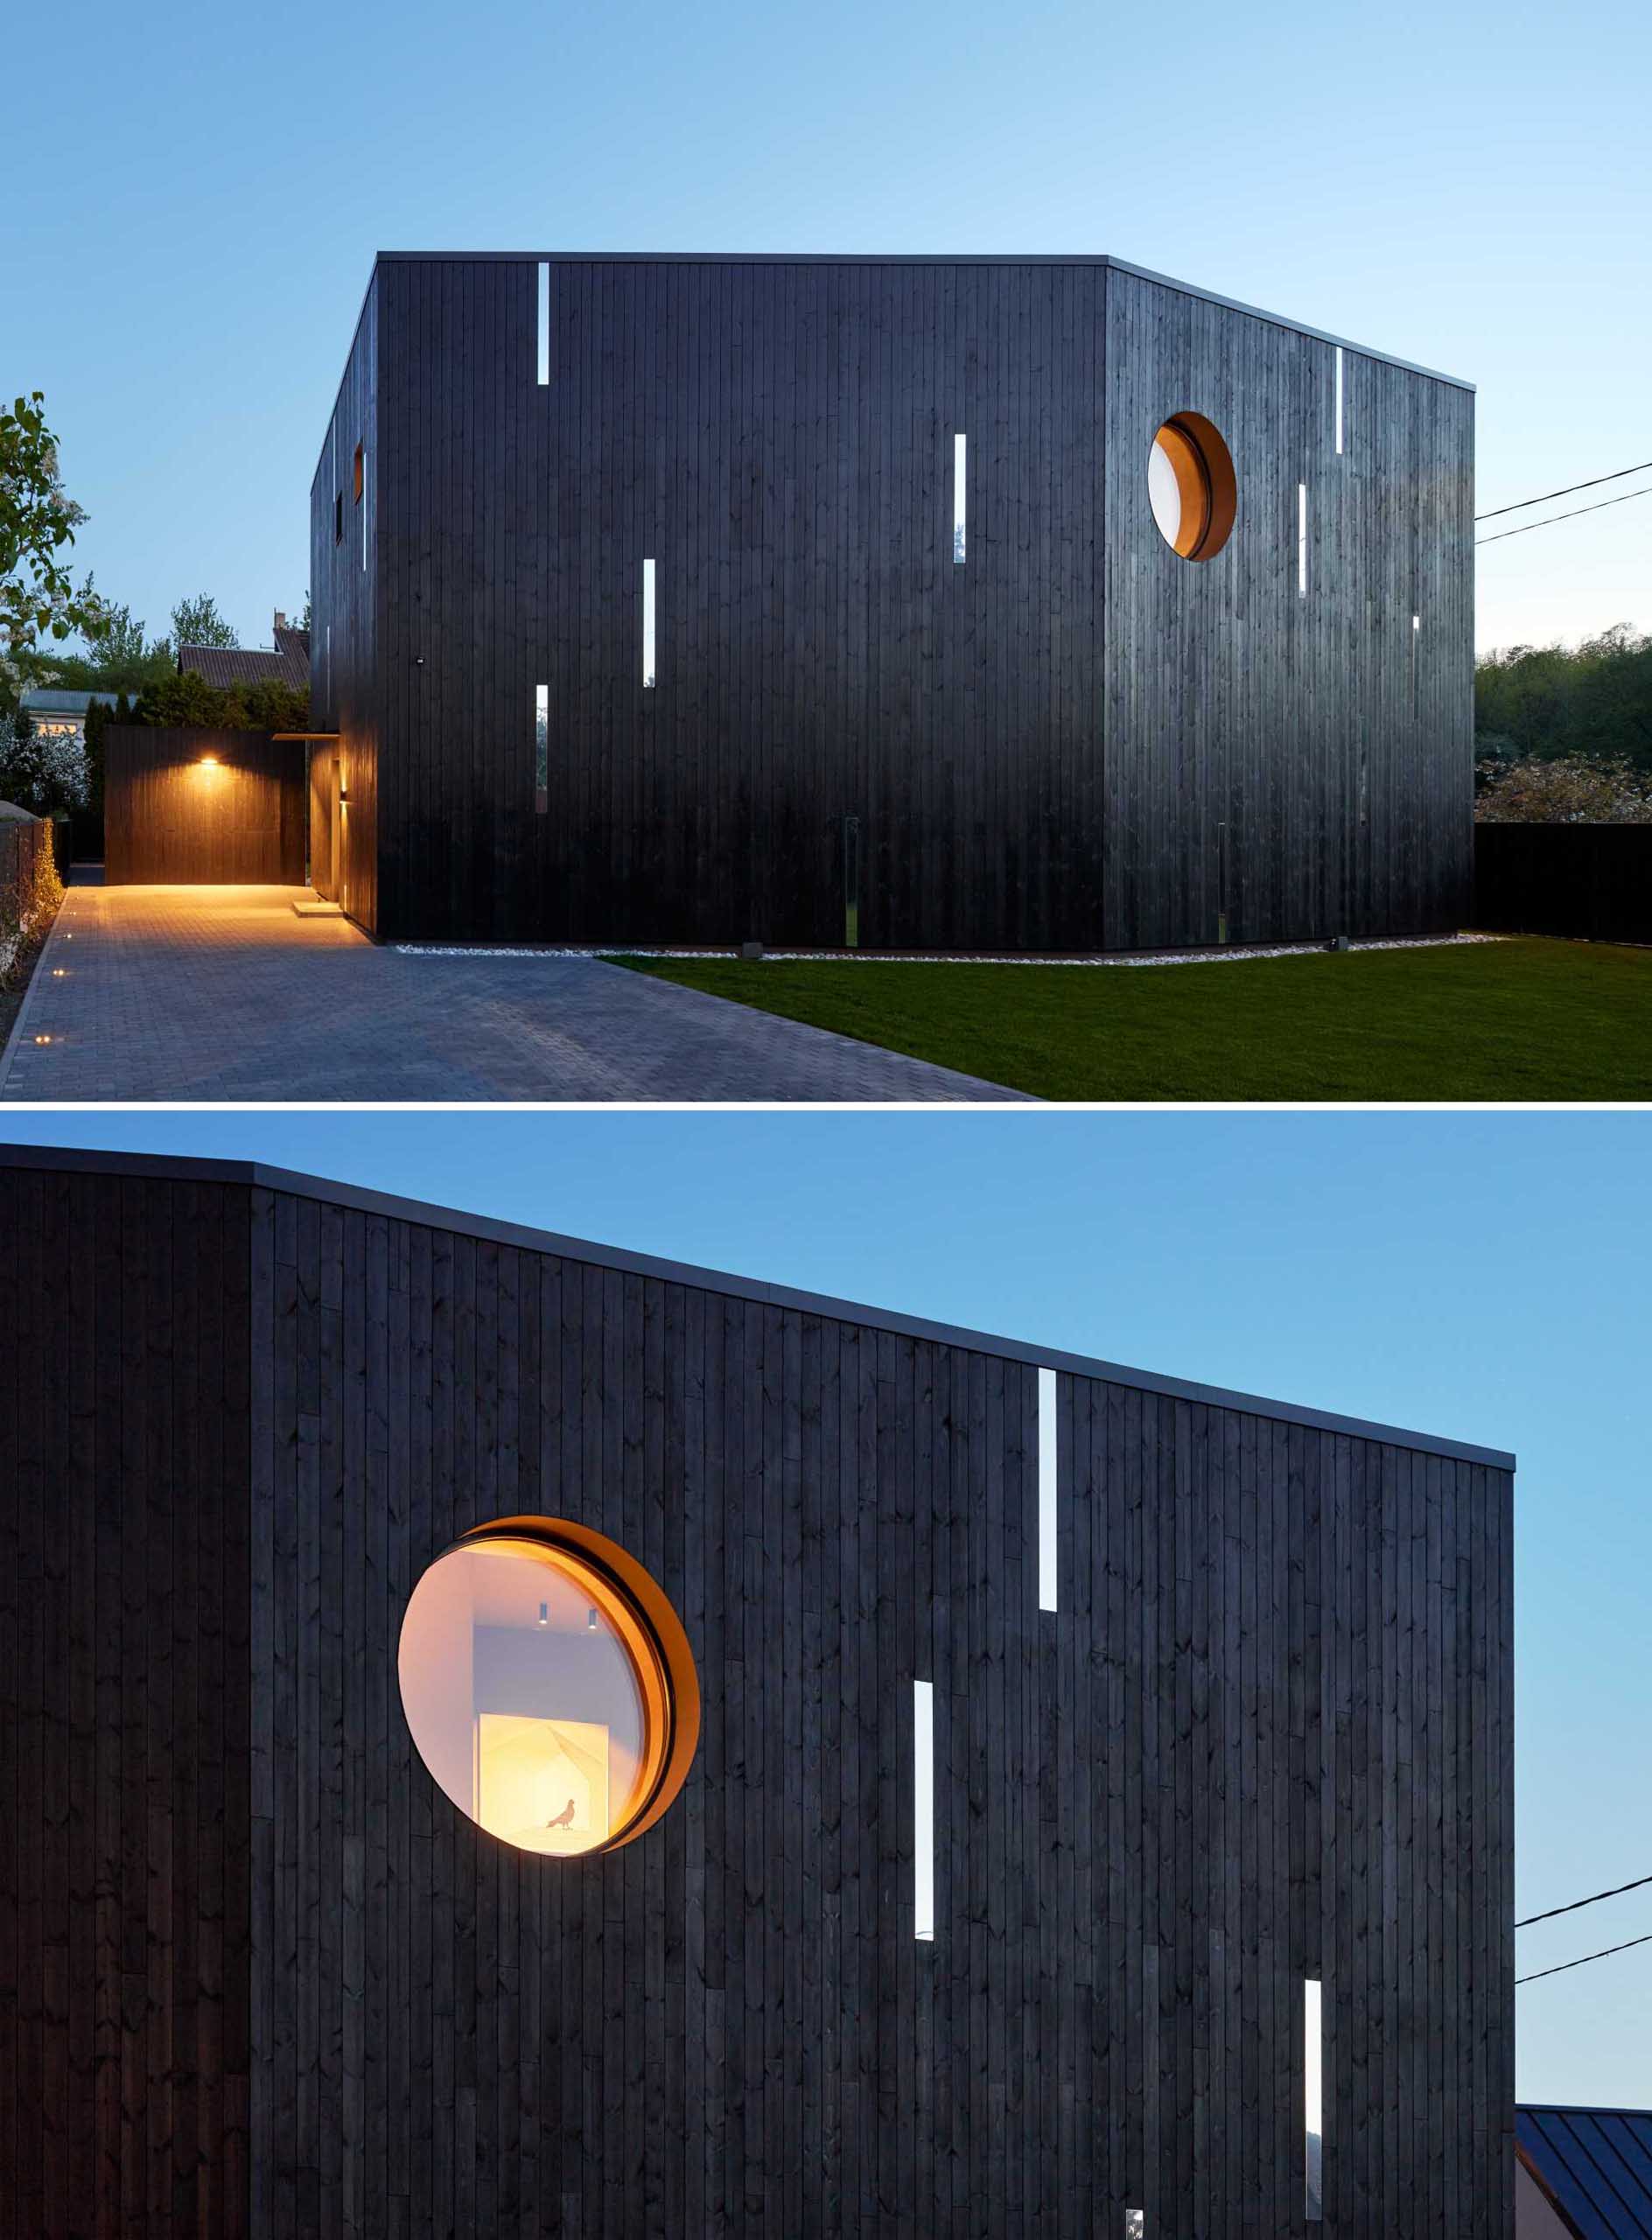 Một ngôi nhà hiện đại với ngoại thất bằng gỗ màu đen và các điểm nhấn bằng gương.